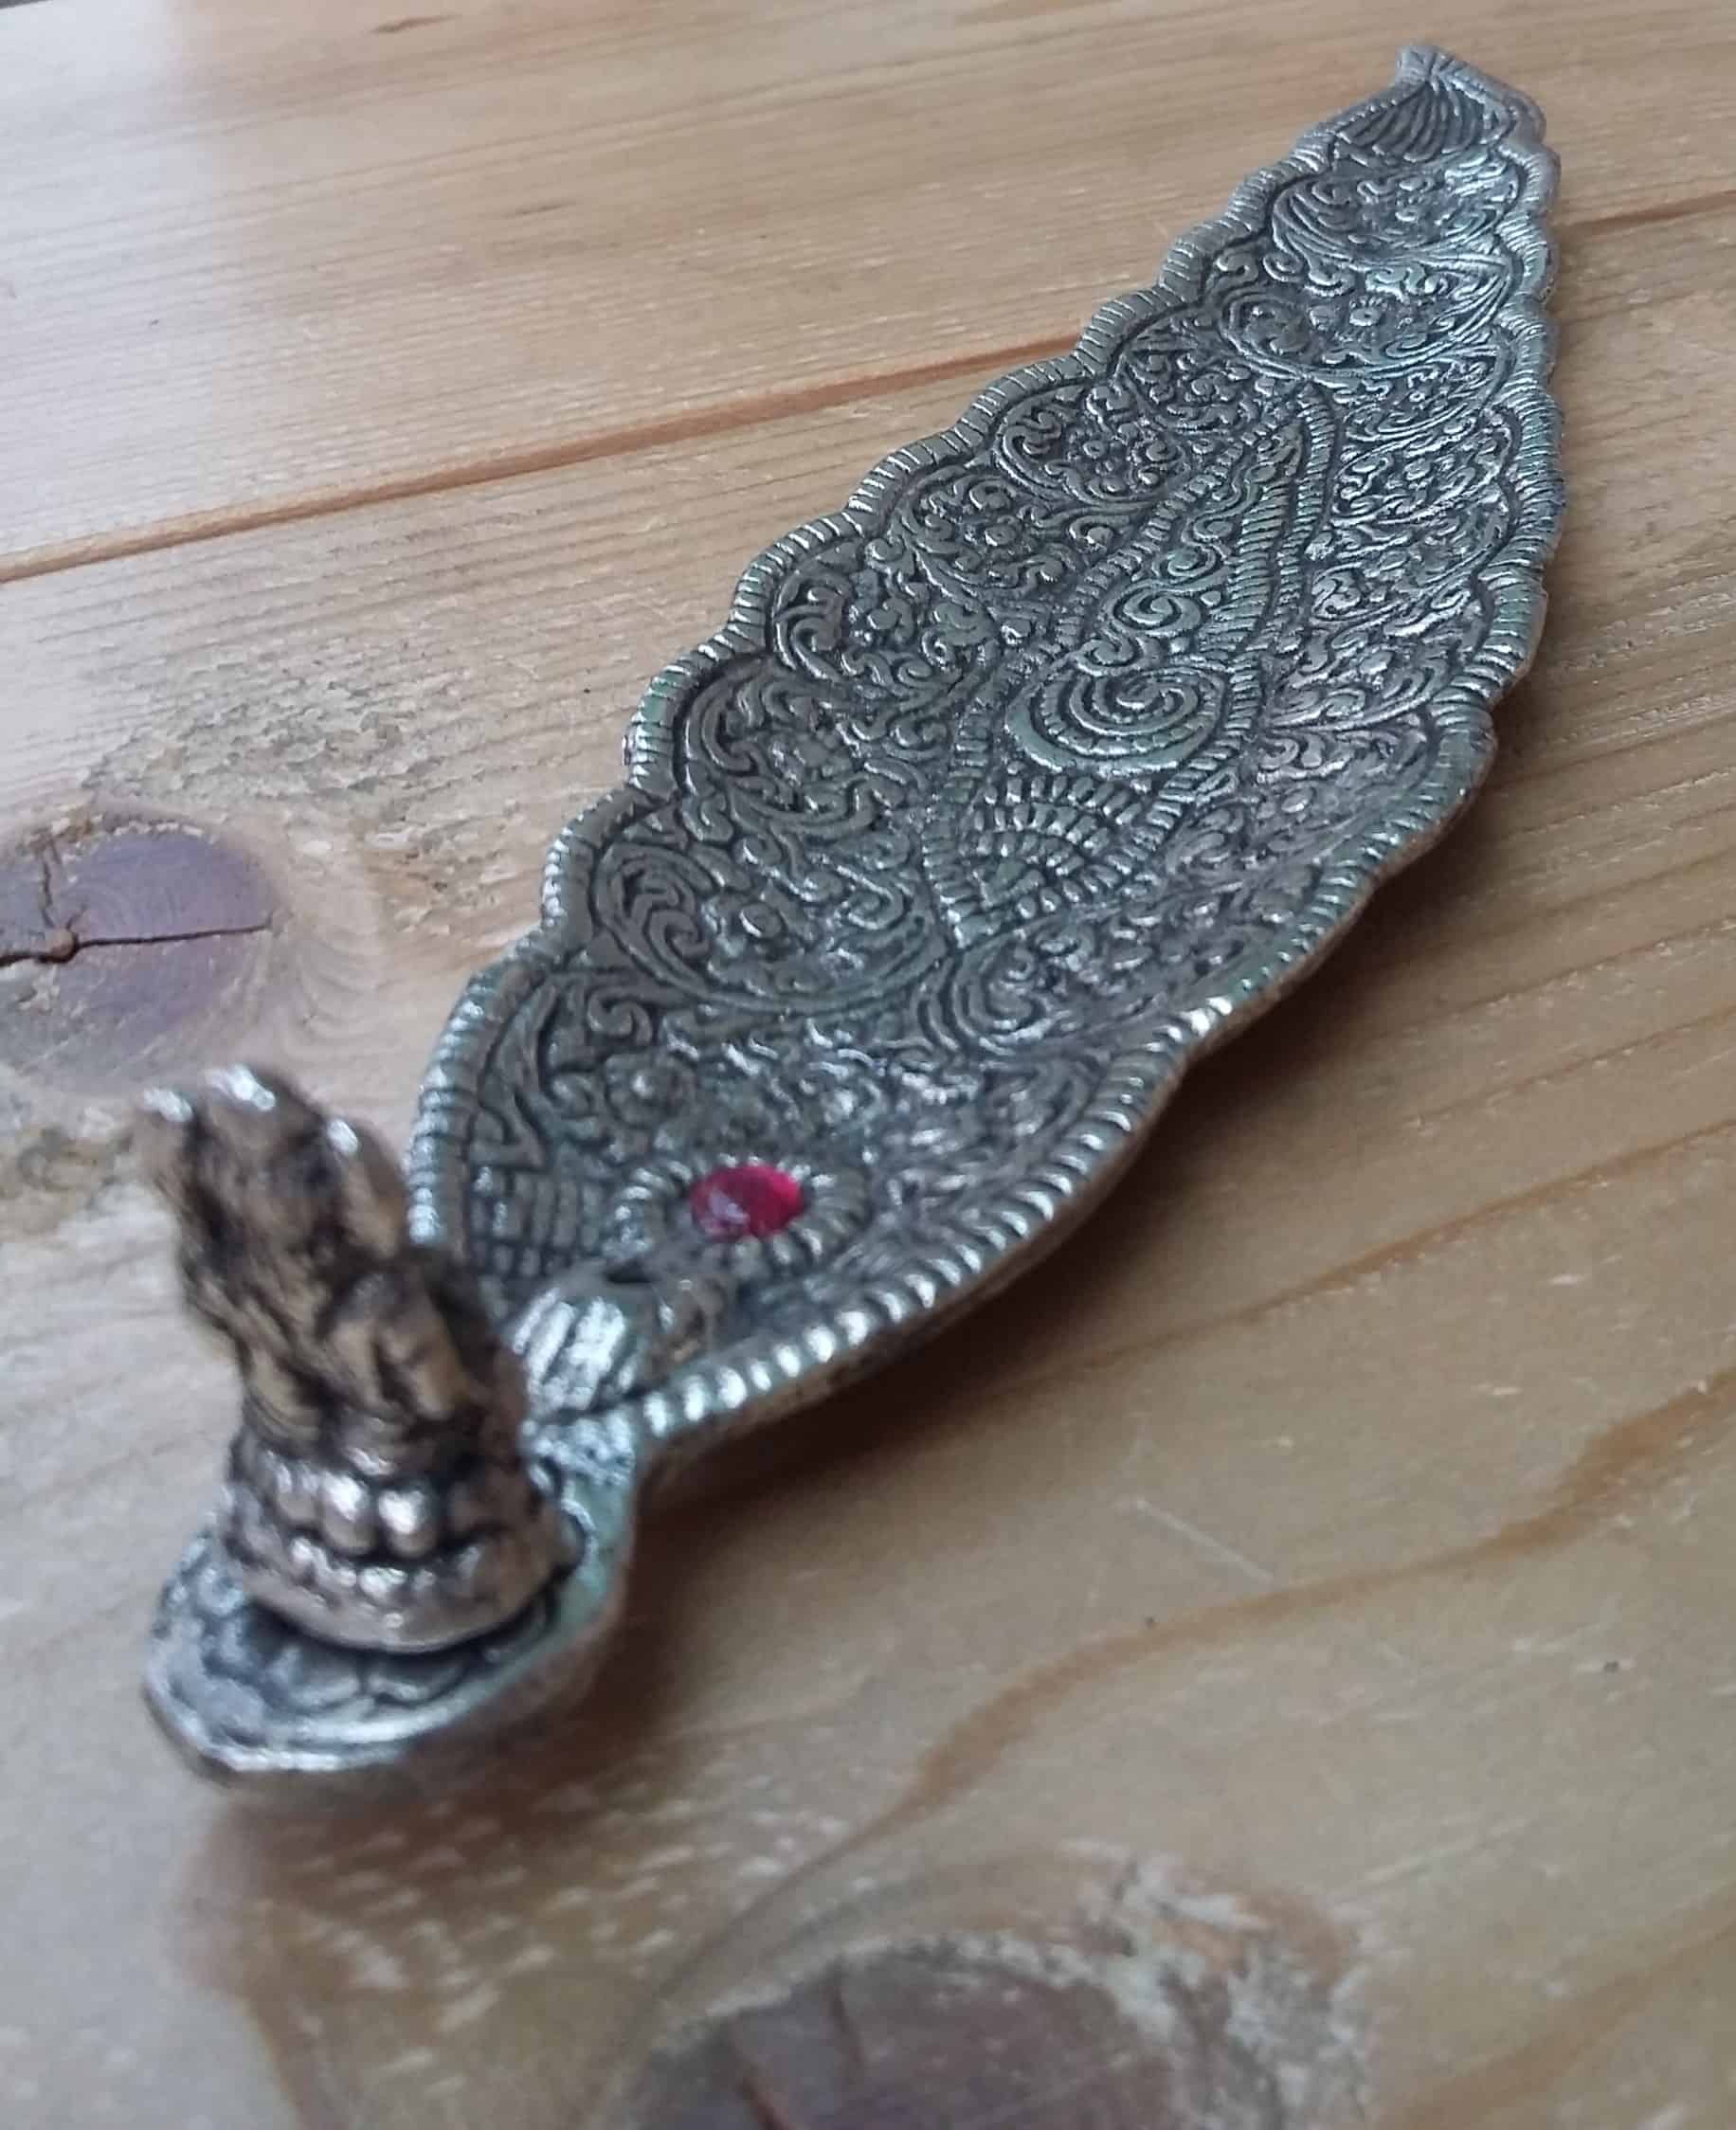 Ornate Metal Incense Holder - Long Leaf Design With Ganesha